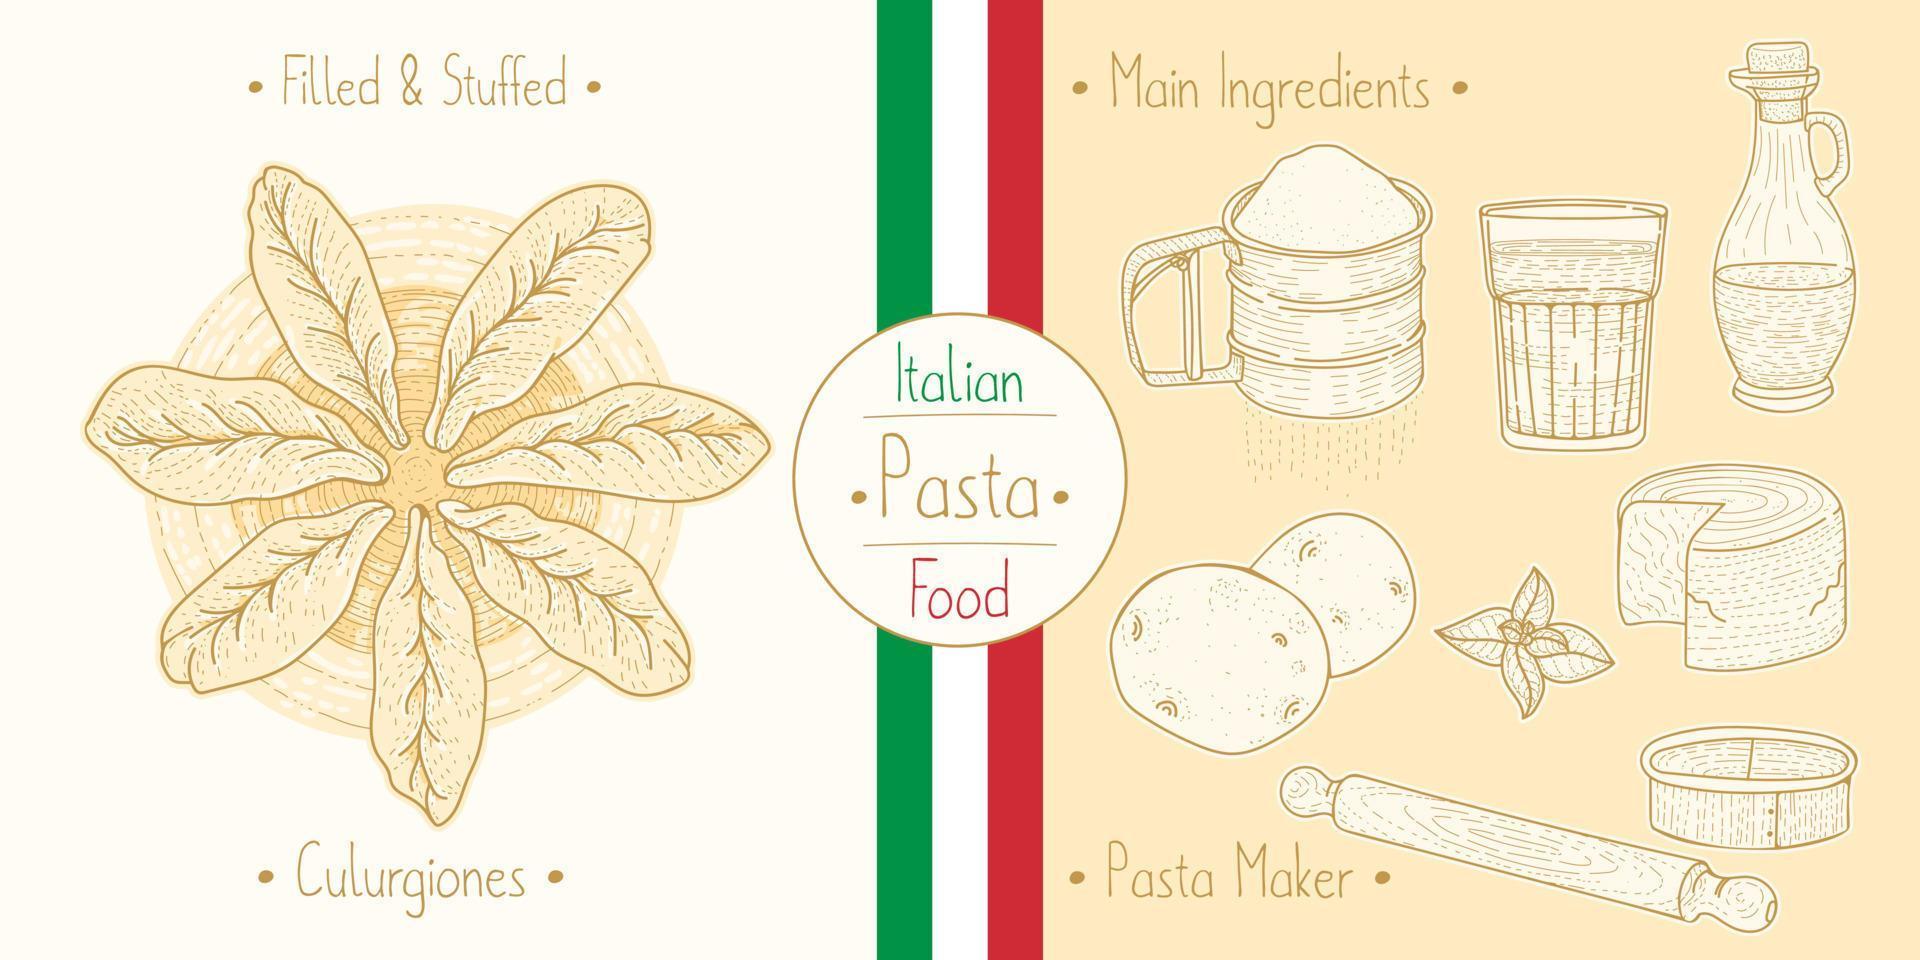 cozinhar comida italiana recheada de macarrão culugrione com recheio e ingredientes principais e equipamentos de fabricantes de massas, esboçar ilustração em estilo vintage vetor